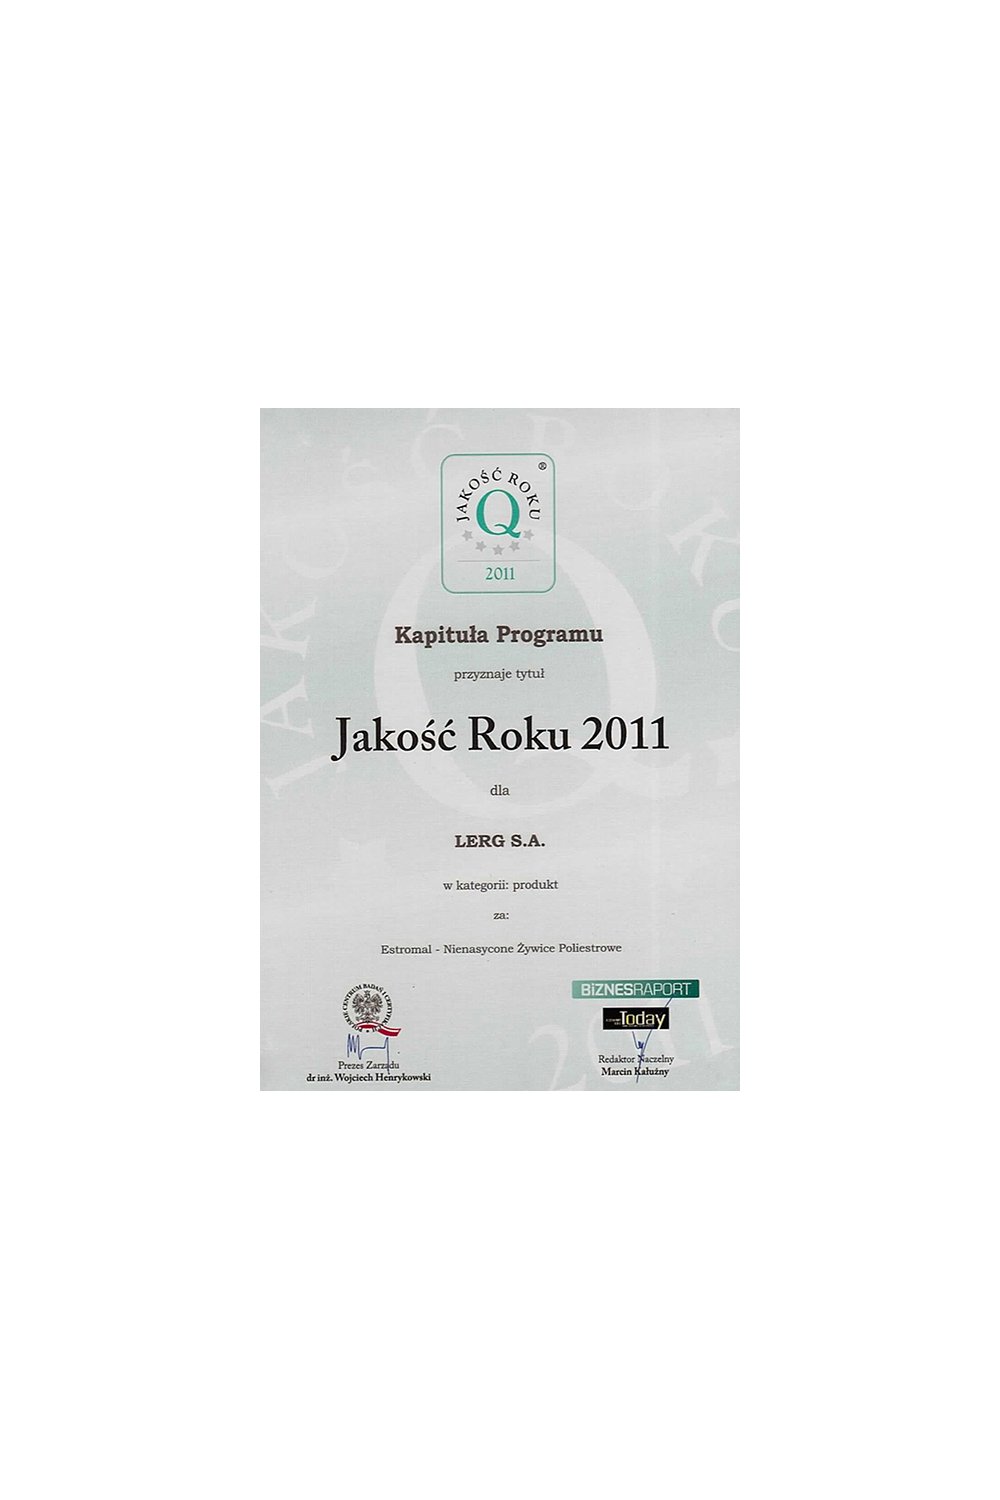 Certyfikat Jakość Roku 2011 - zdjęcie